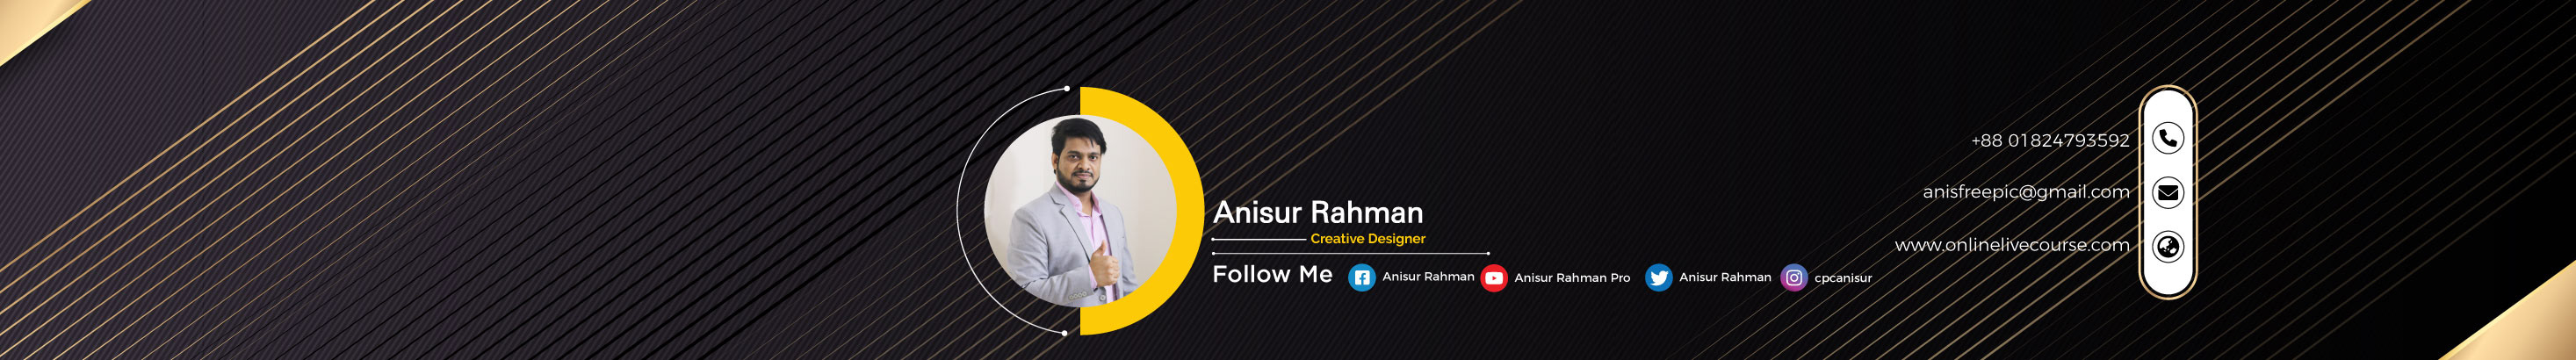 Banner profilu uživatele Anisur Rahman